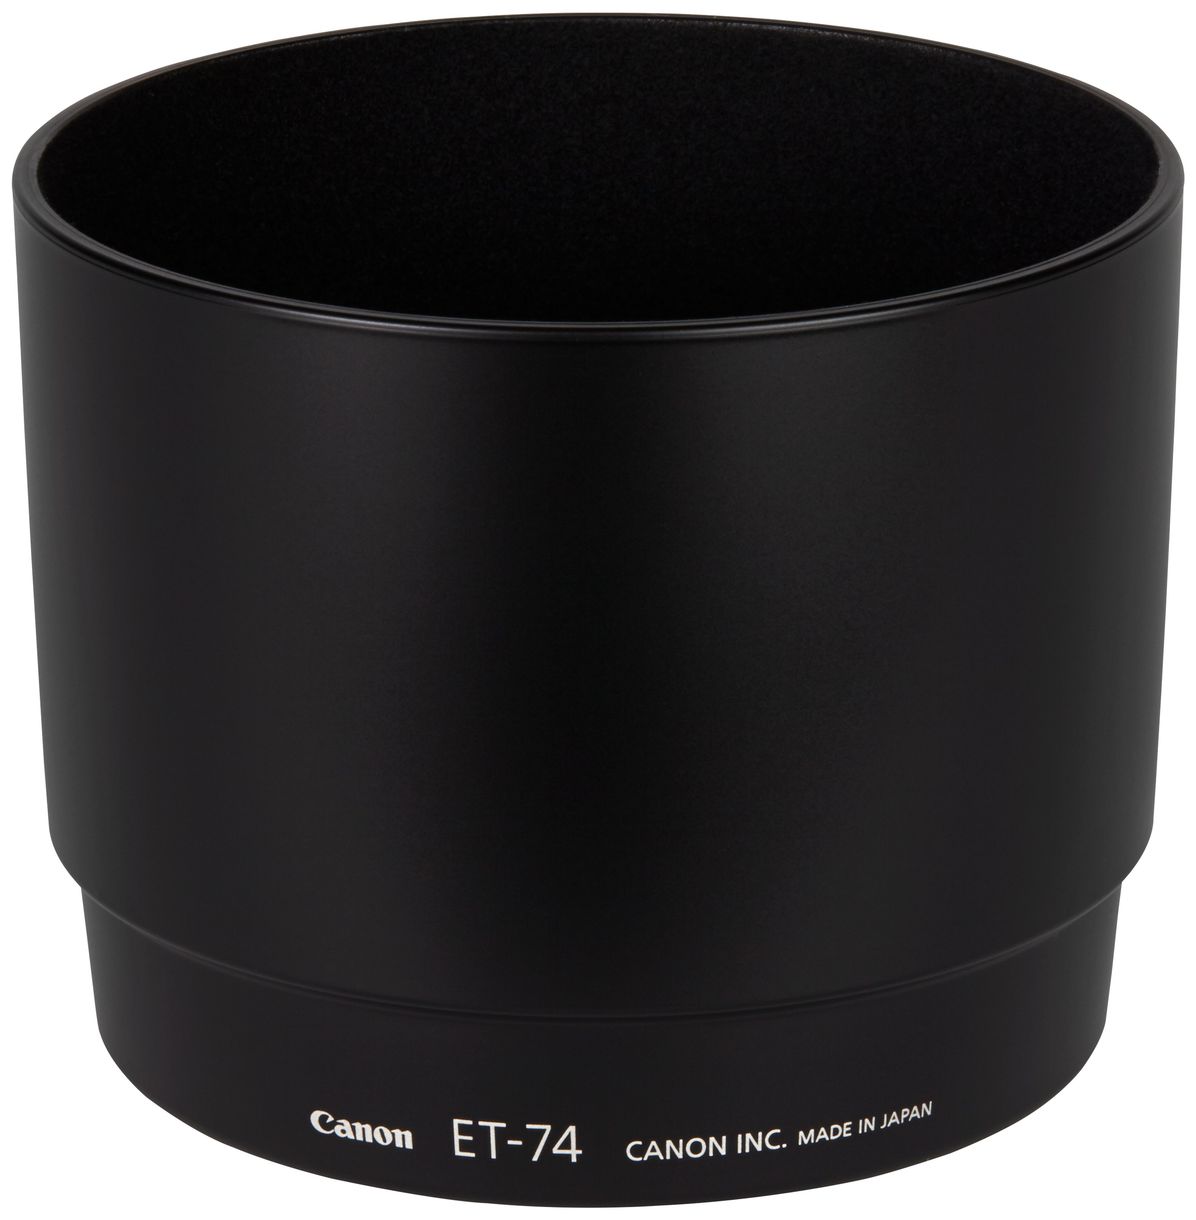 ET-74 Gegenlichtblende für EF 70-200mm L USM Objektiv-Zubehör Schwarz 